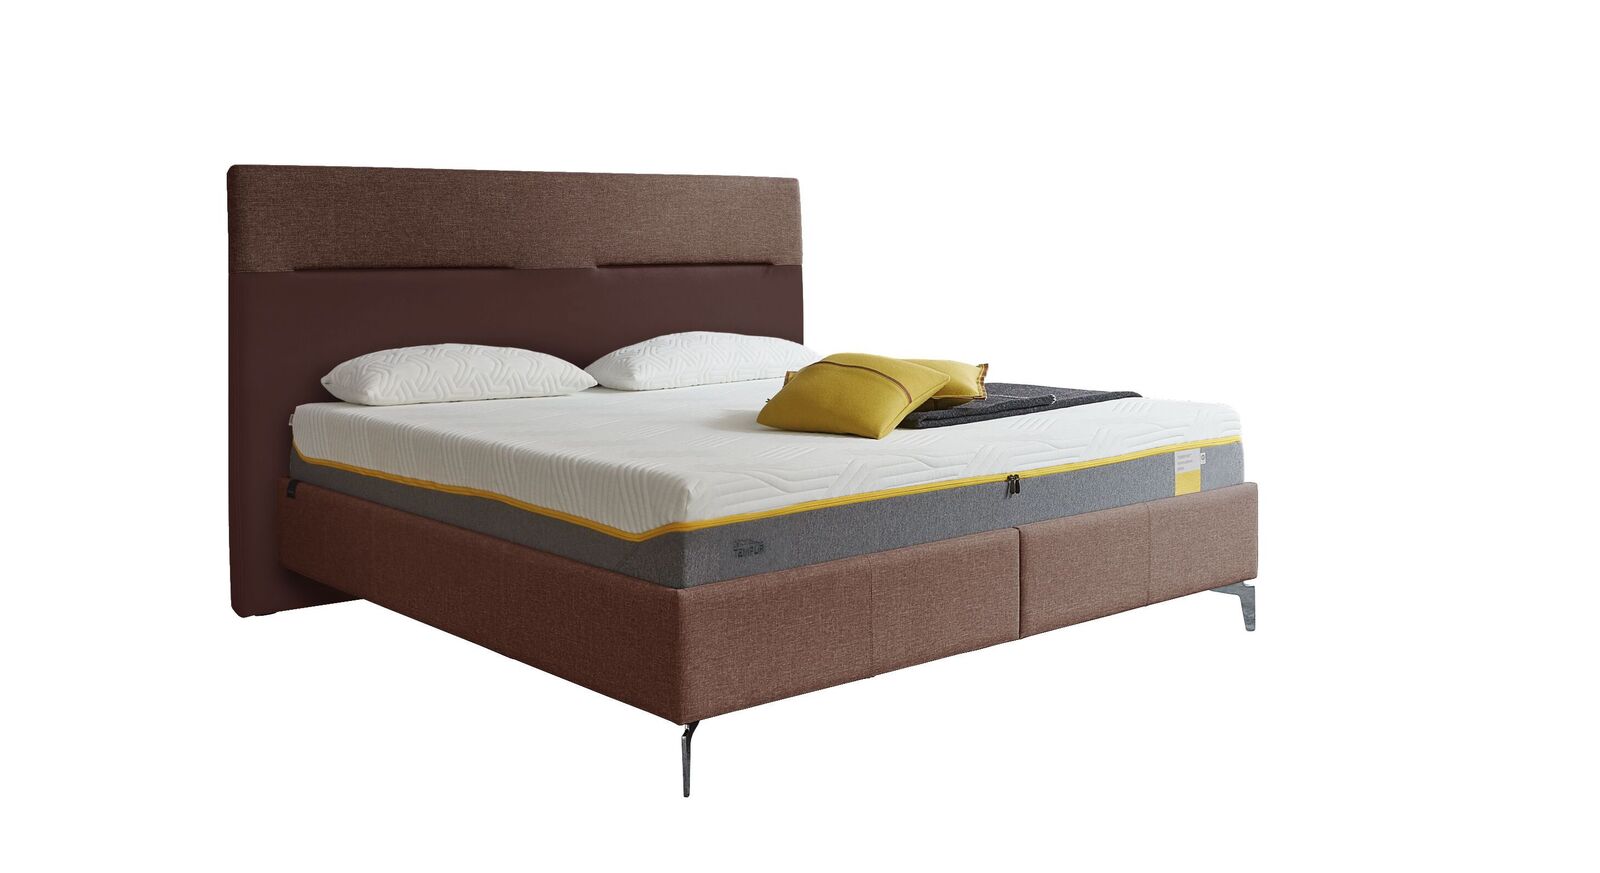 TEMPUR Bett Relax Texture mit Bezug in Webstoff und Kunstleder in Weinrot